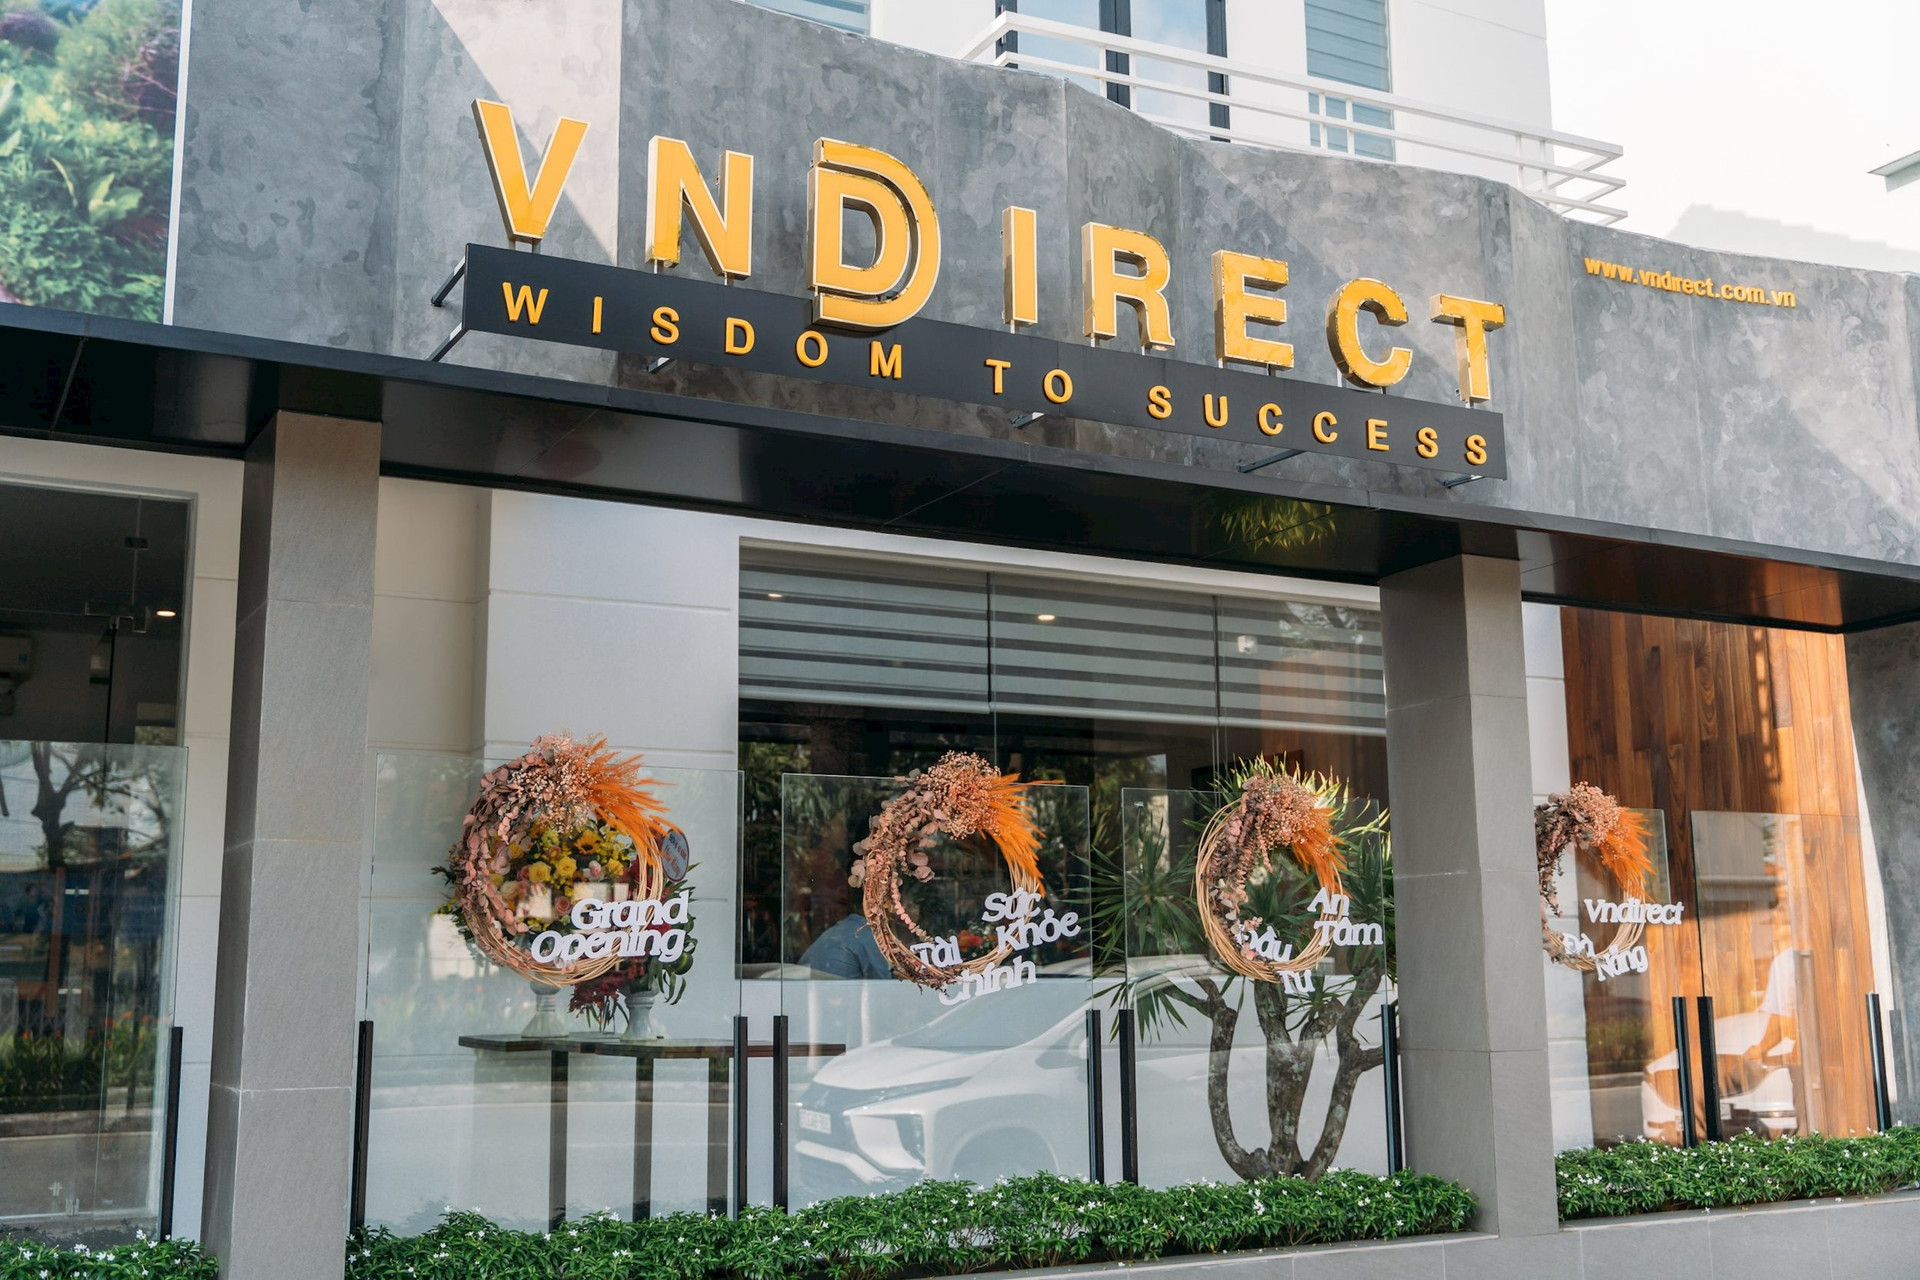 Cổ phiếu VND tăng kịch trần, VNDIRECT trở lại câu lạc bộ tỷ USD vốn hóa - Ảnh 1.